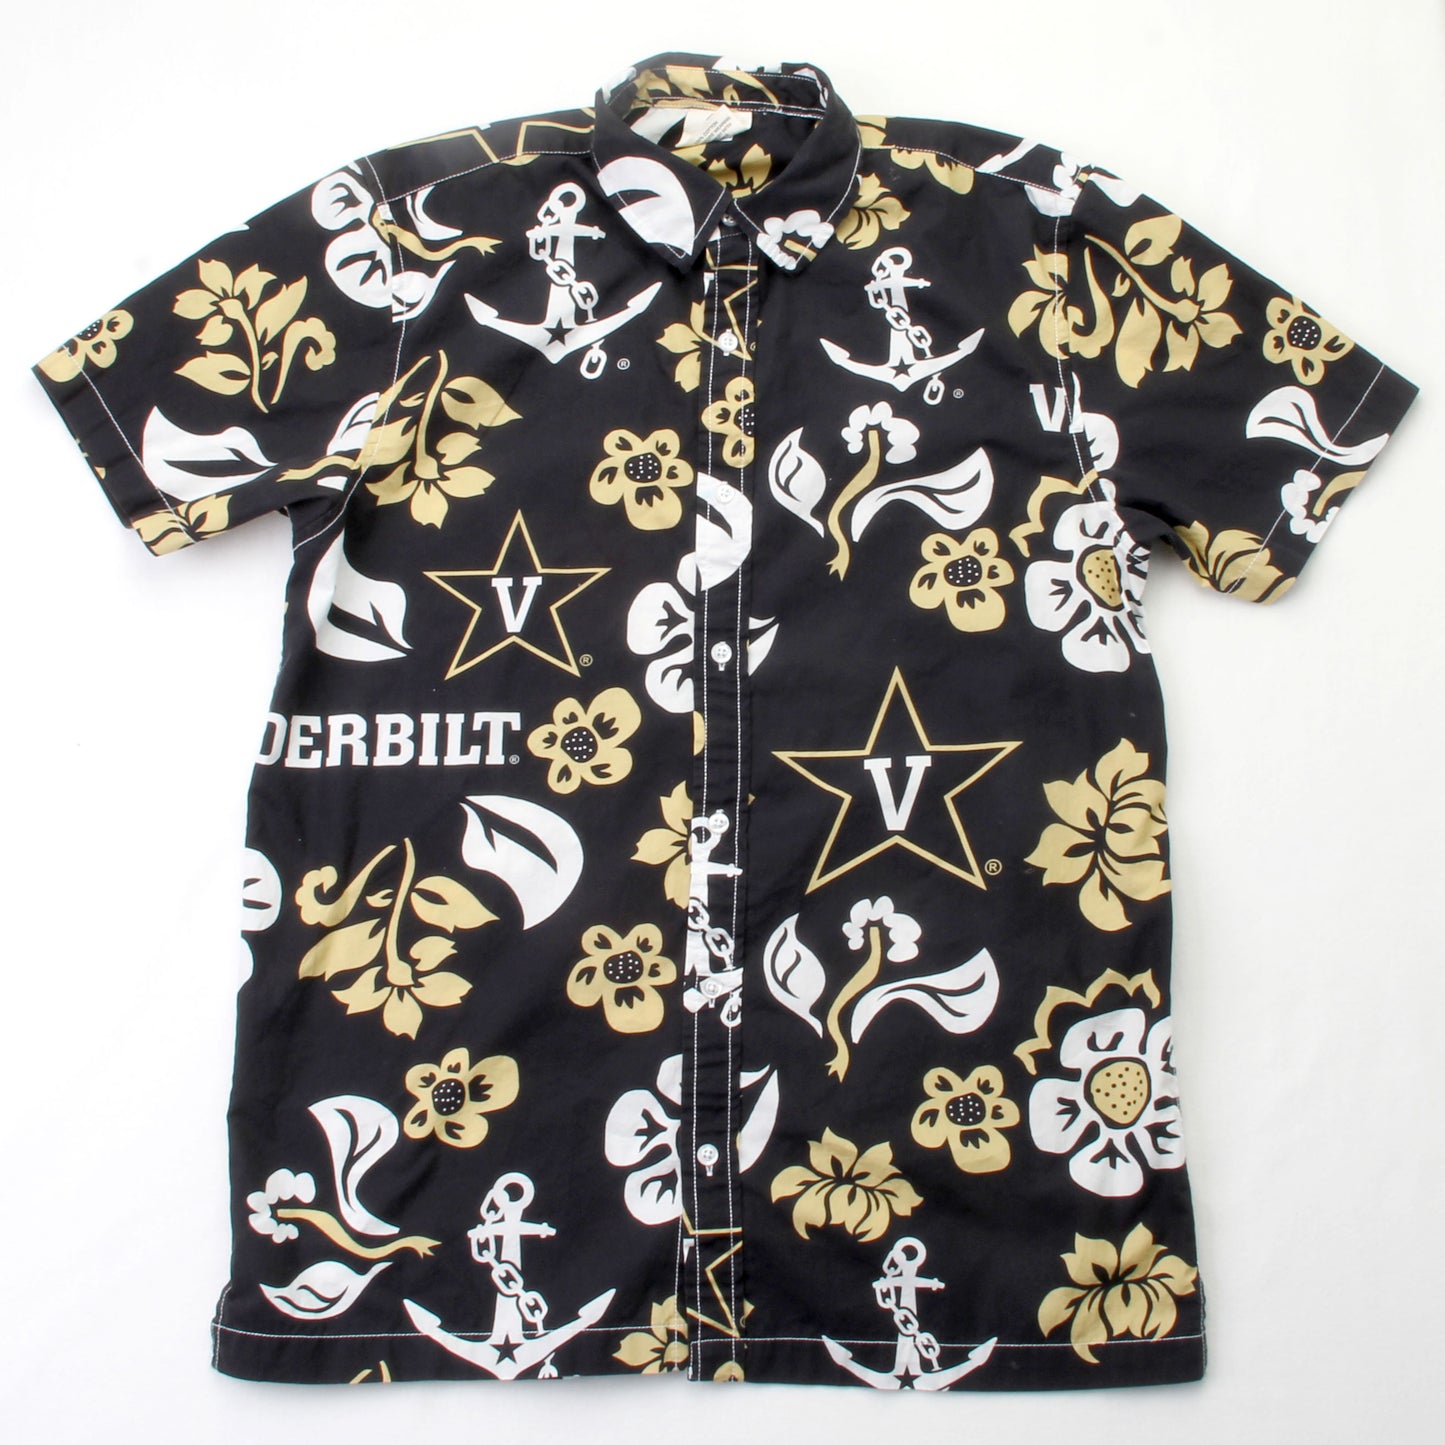 Vanderbilt Commodores Men's Floral Shirt